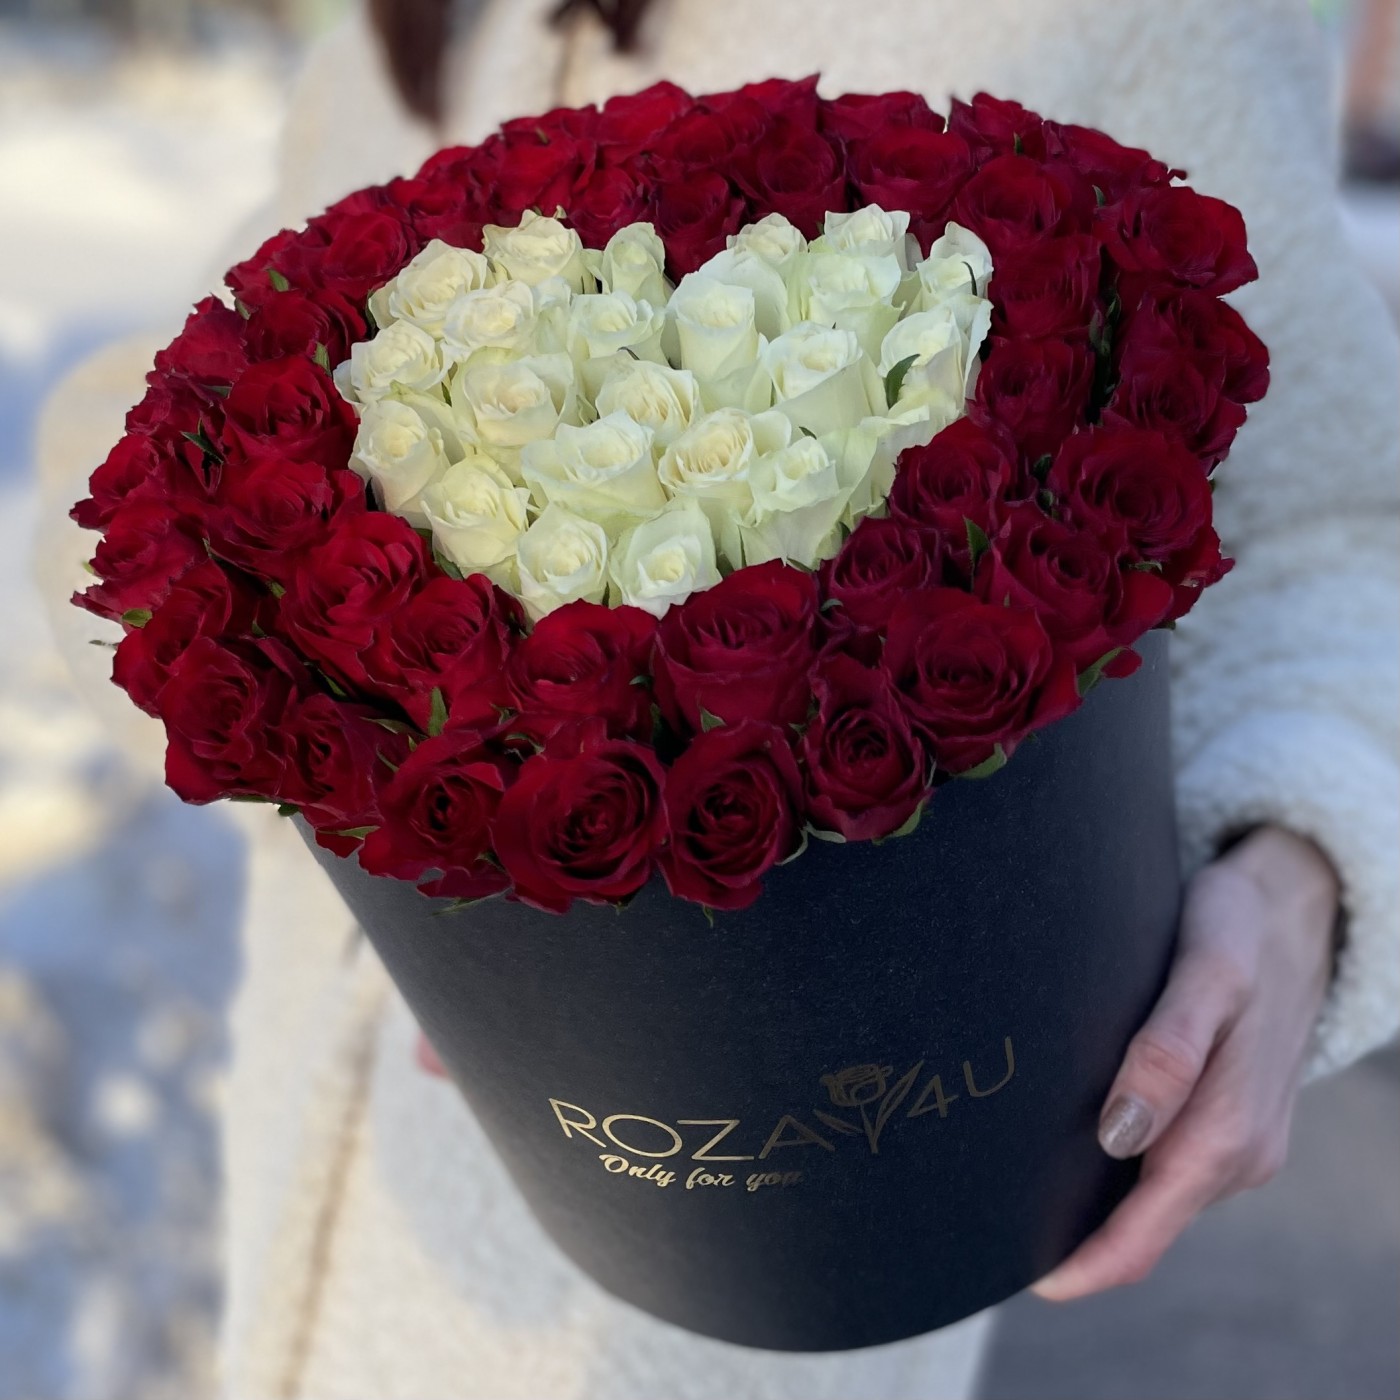 Большая коробка из красных роз вокруг белого сердца